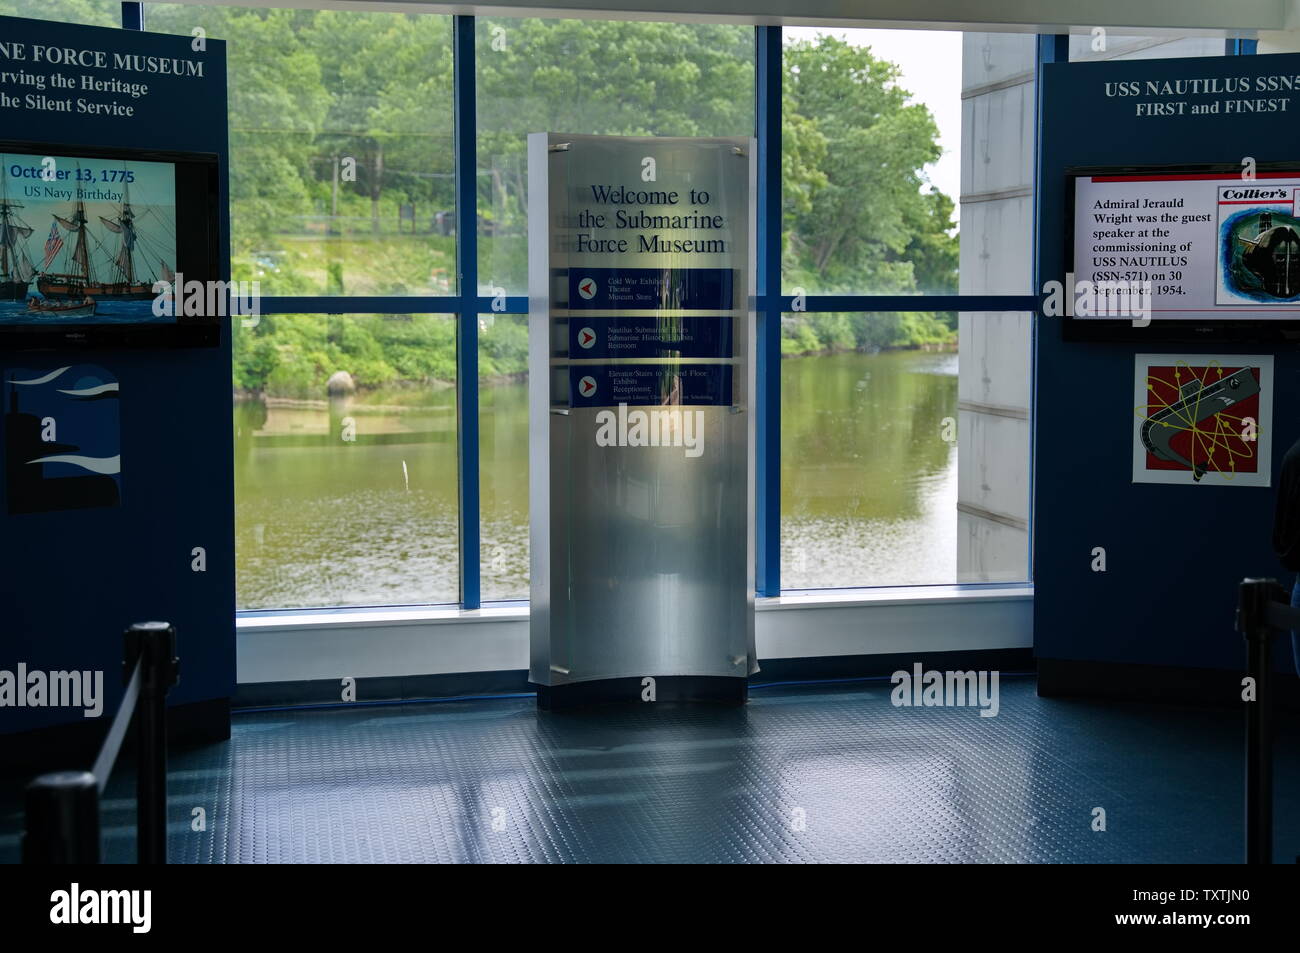 Museo de la fuerza de submarinos, Groton CT USA, jun 2019. Interior con fotos, exposiciones y réplicas que conducen a la evolución de la moderna de submarinos de ataque. Foto de stock